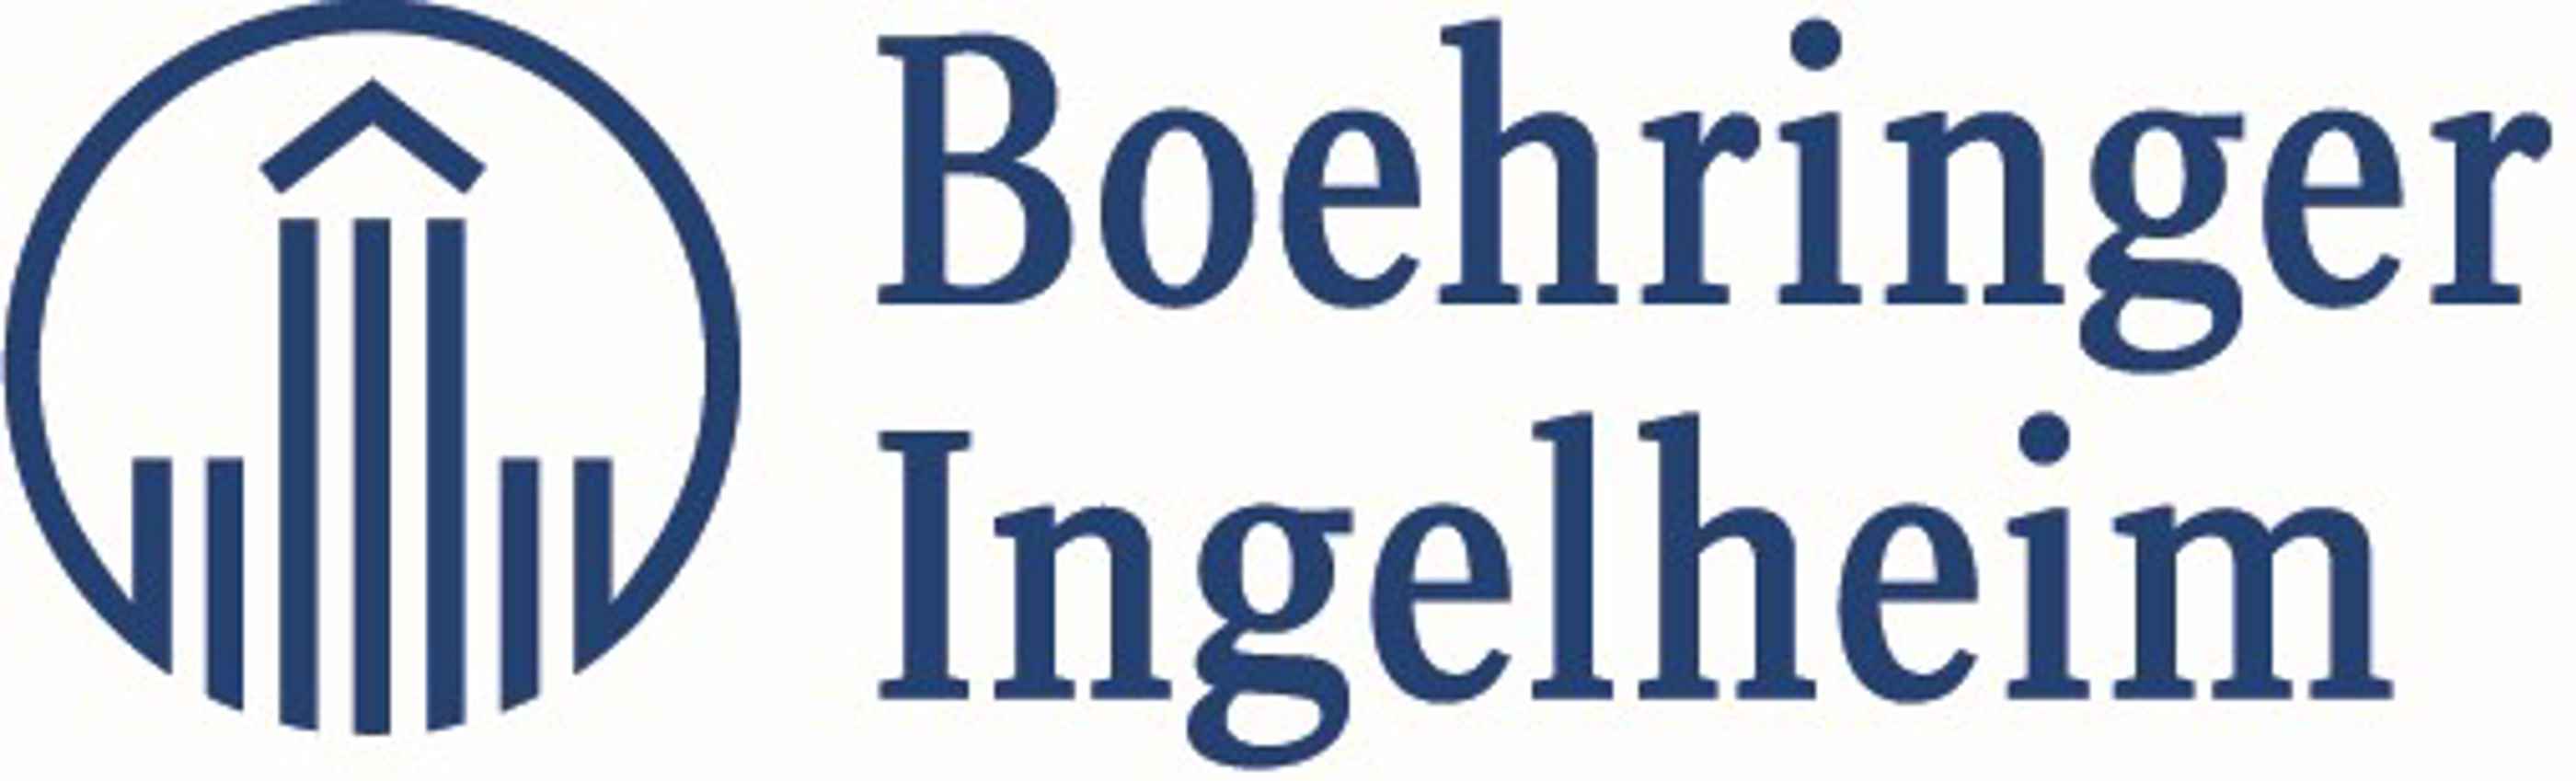 Boehringer_Ingelheim_Logo.jpg